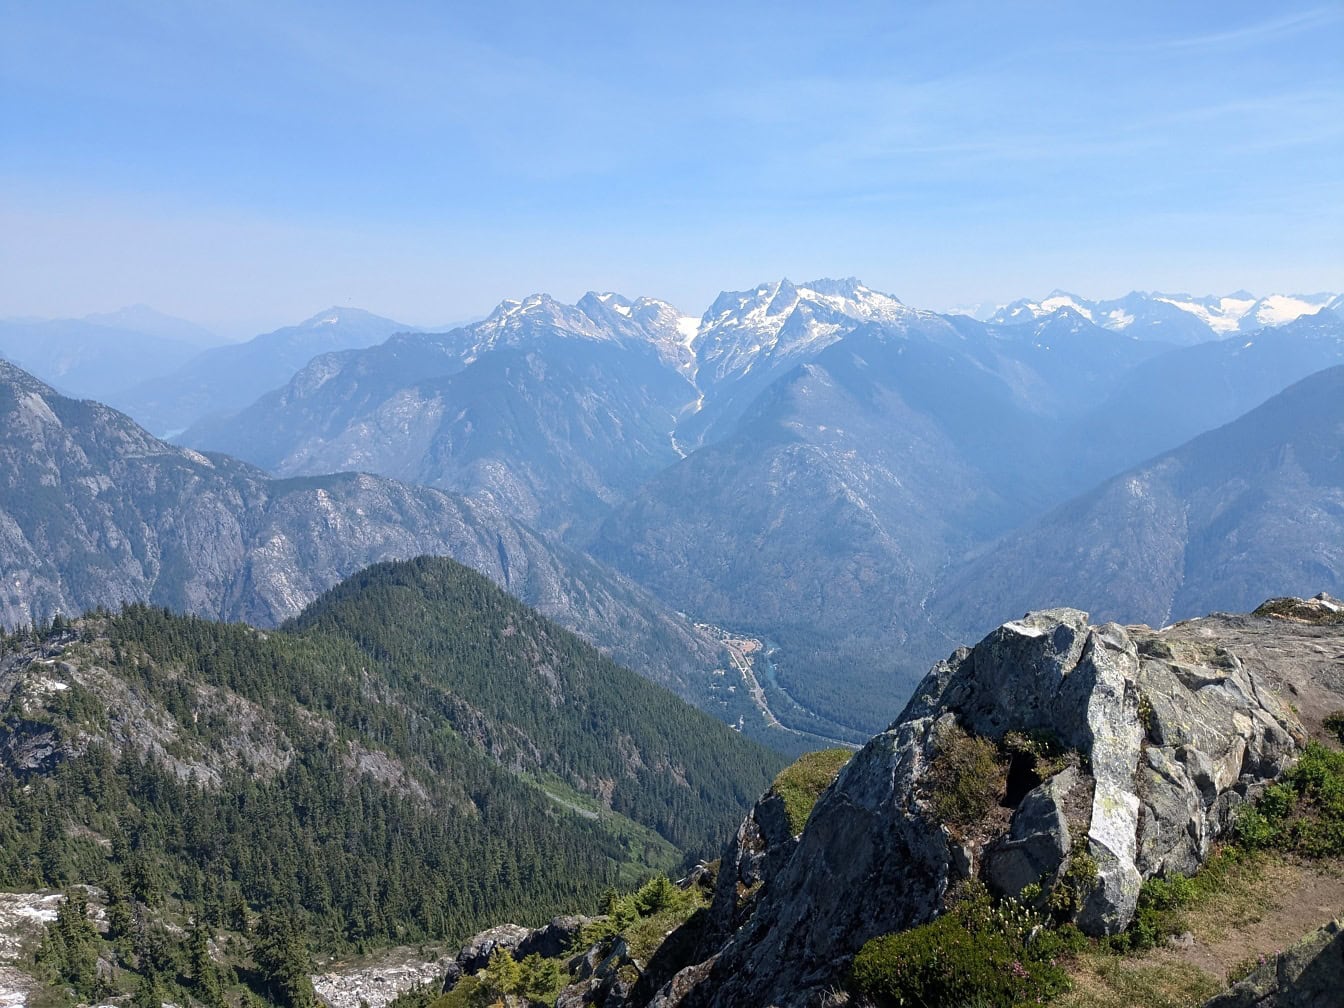 Dolina u planinskom lancu sa snijegom prekrivenim planinama u Nacionalnom parku North Cascades u američkoj državi Washington